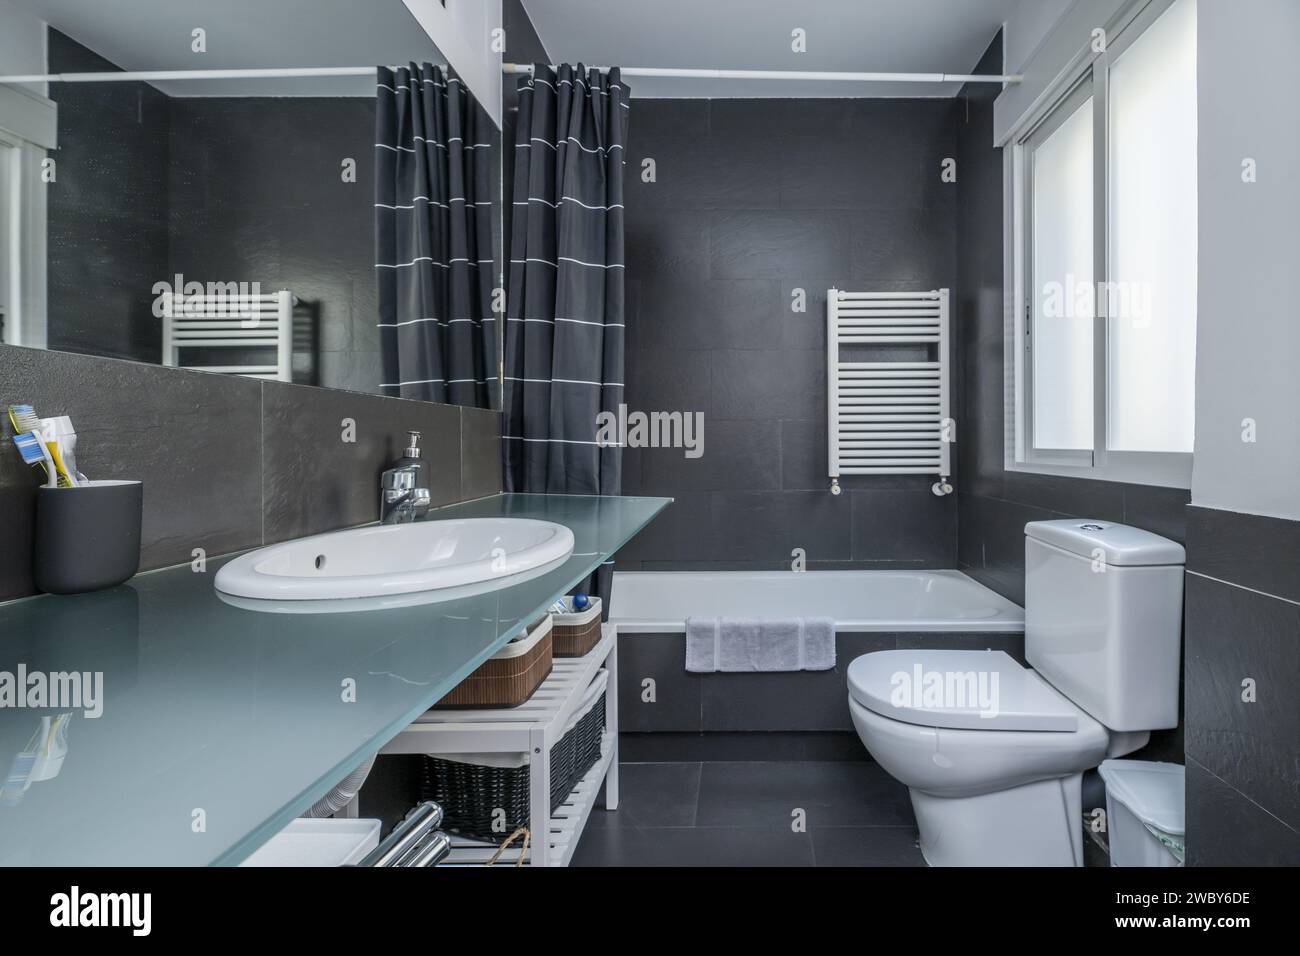 un bagno dal design moderno con pareti in porcellana grigio opaco, specchi integrati nella parete e ripiano in vetro temperato Foto Stock